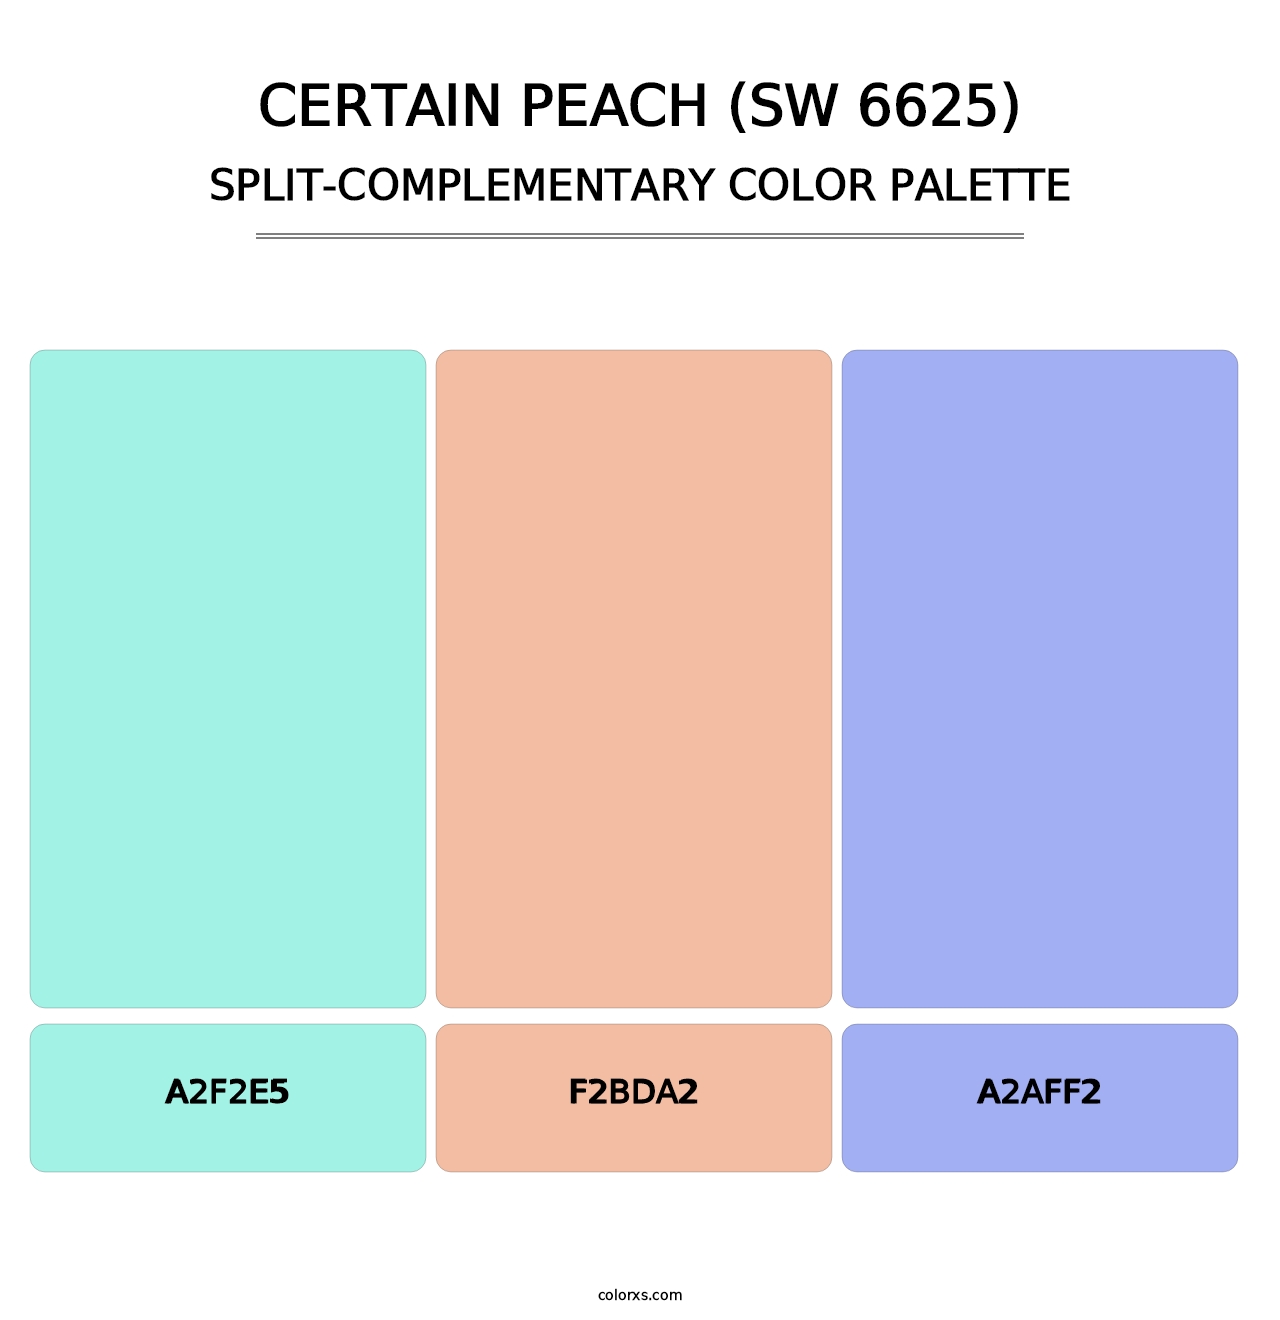 Certain Peach (SW 6625) - Split-Complementary Color Palette